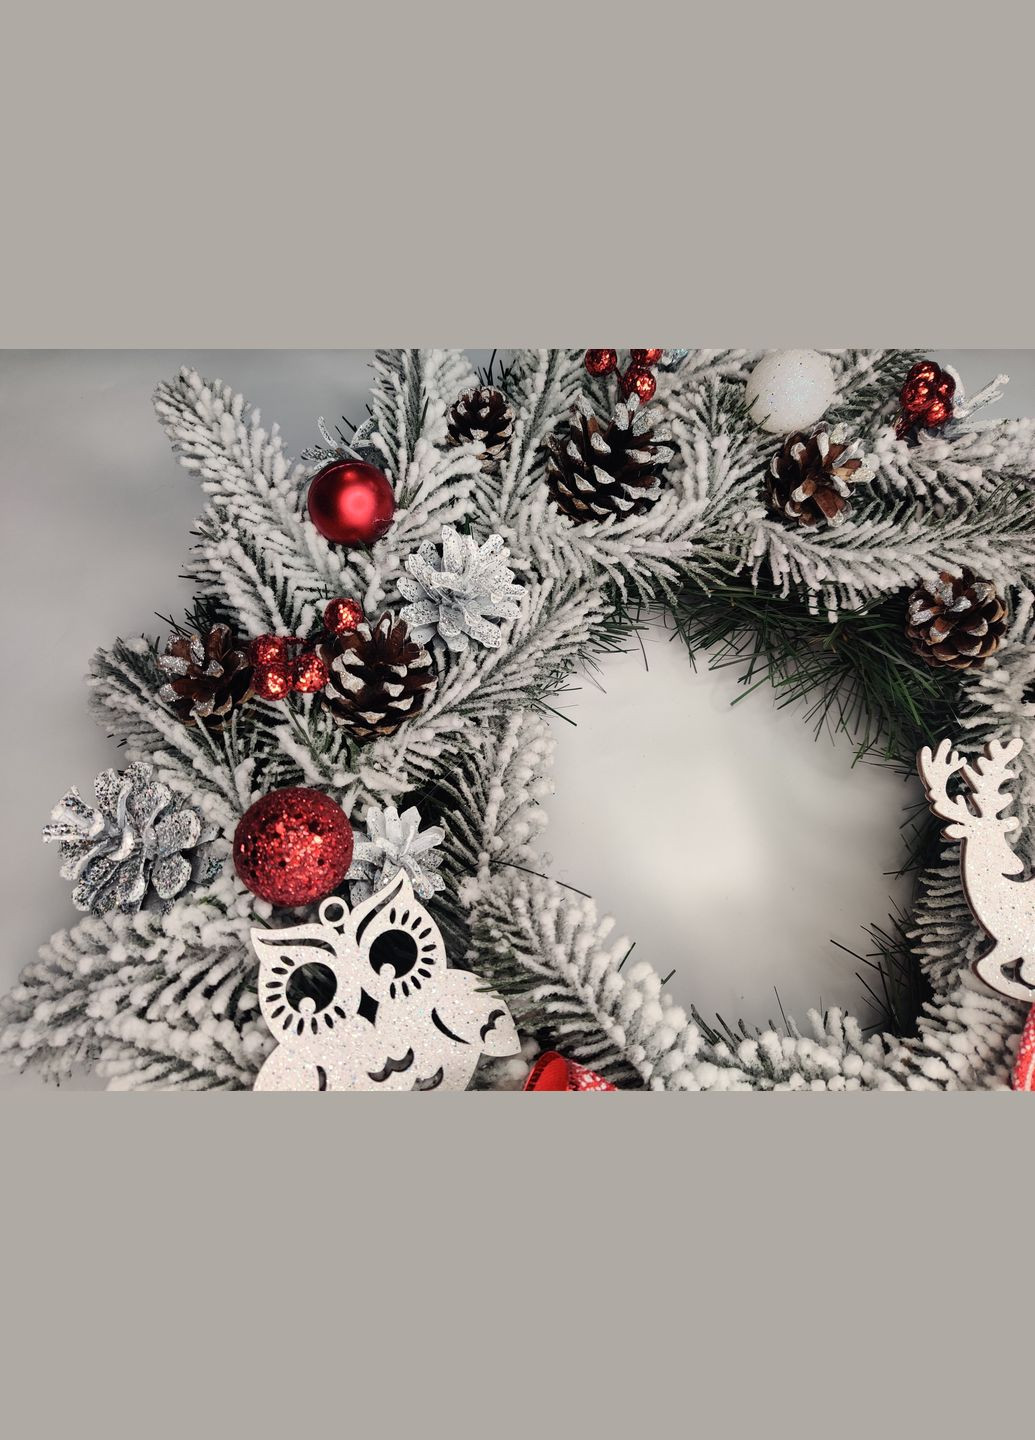 Рождественский новогодний венок 40см. с Натуральным декором Праздничный для интерьера, дверей, стола в Фирменной Vela (273469389)